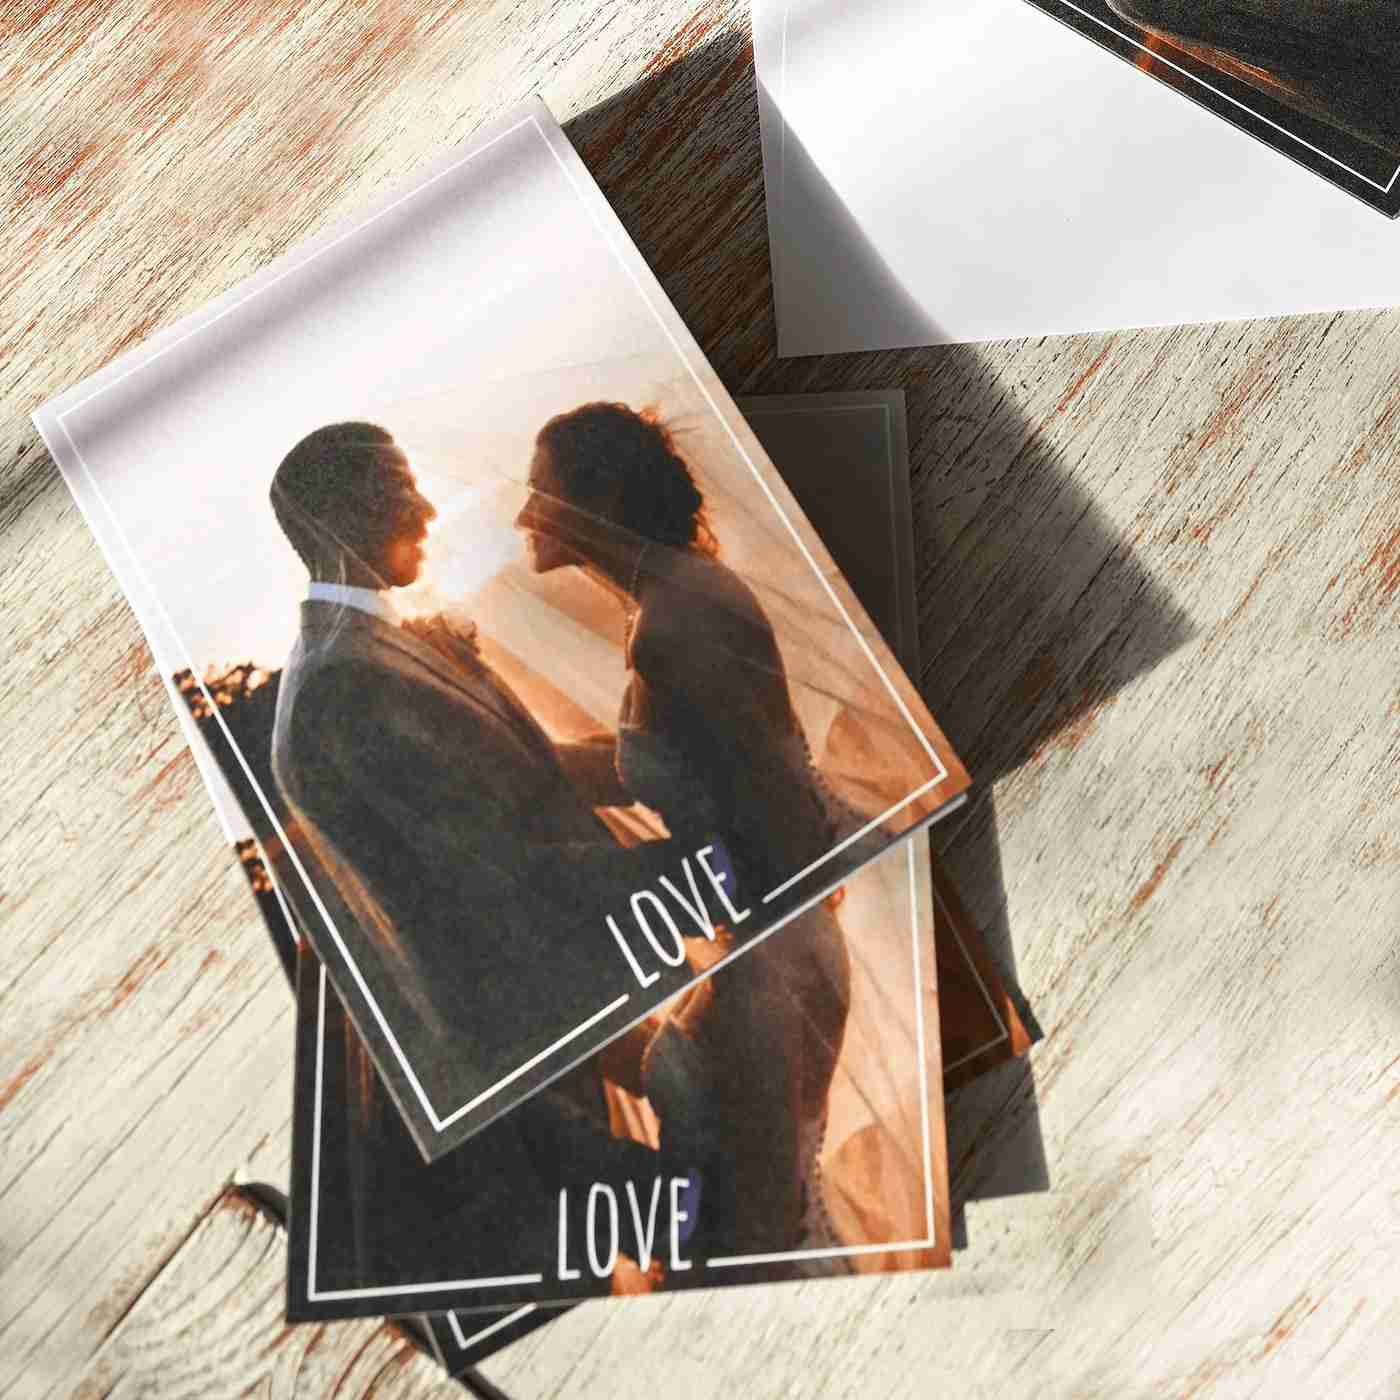 Use your wedding photos as thank you cards